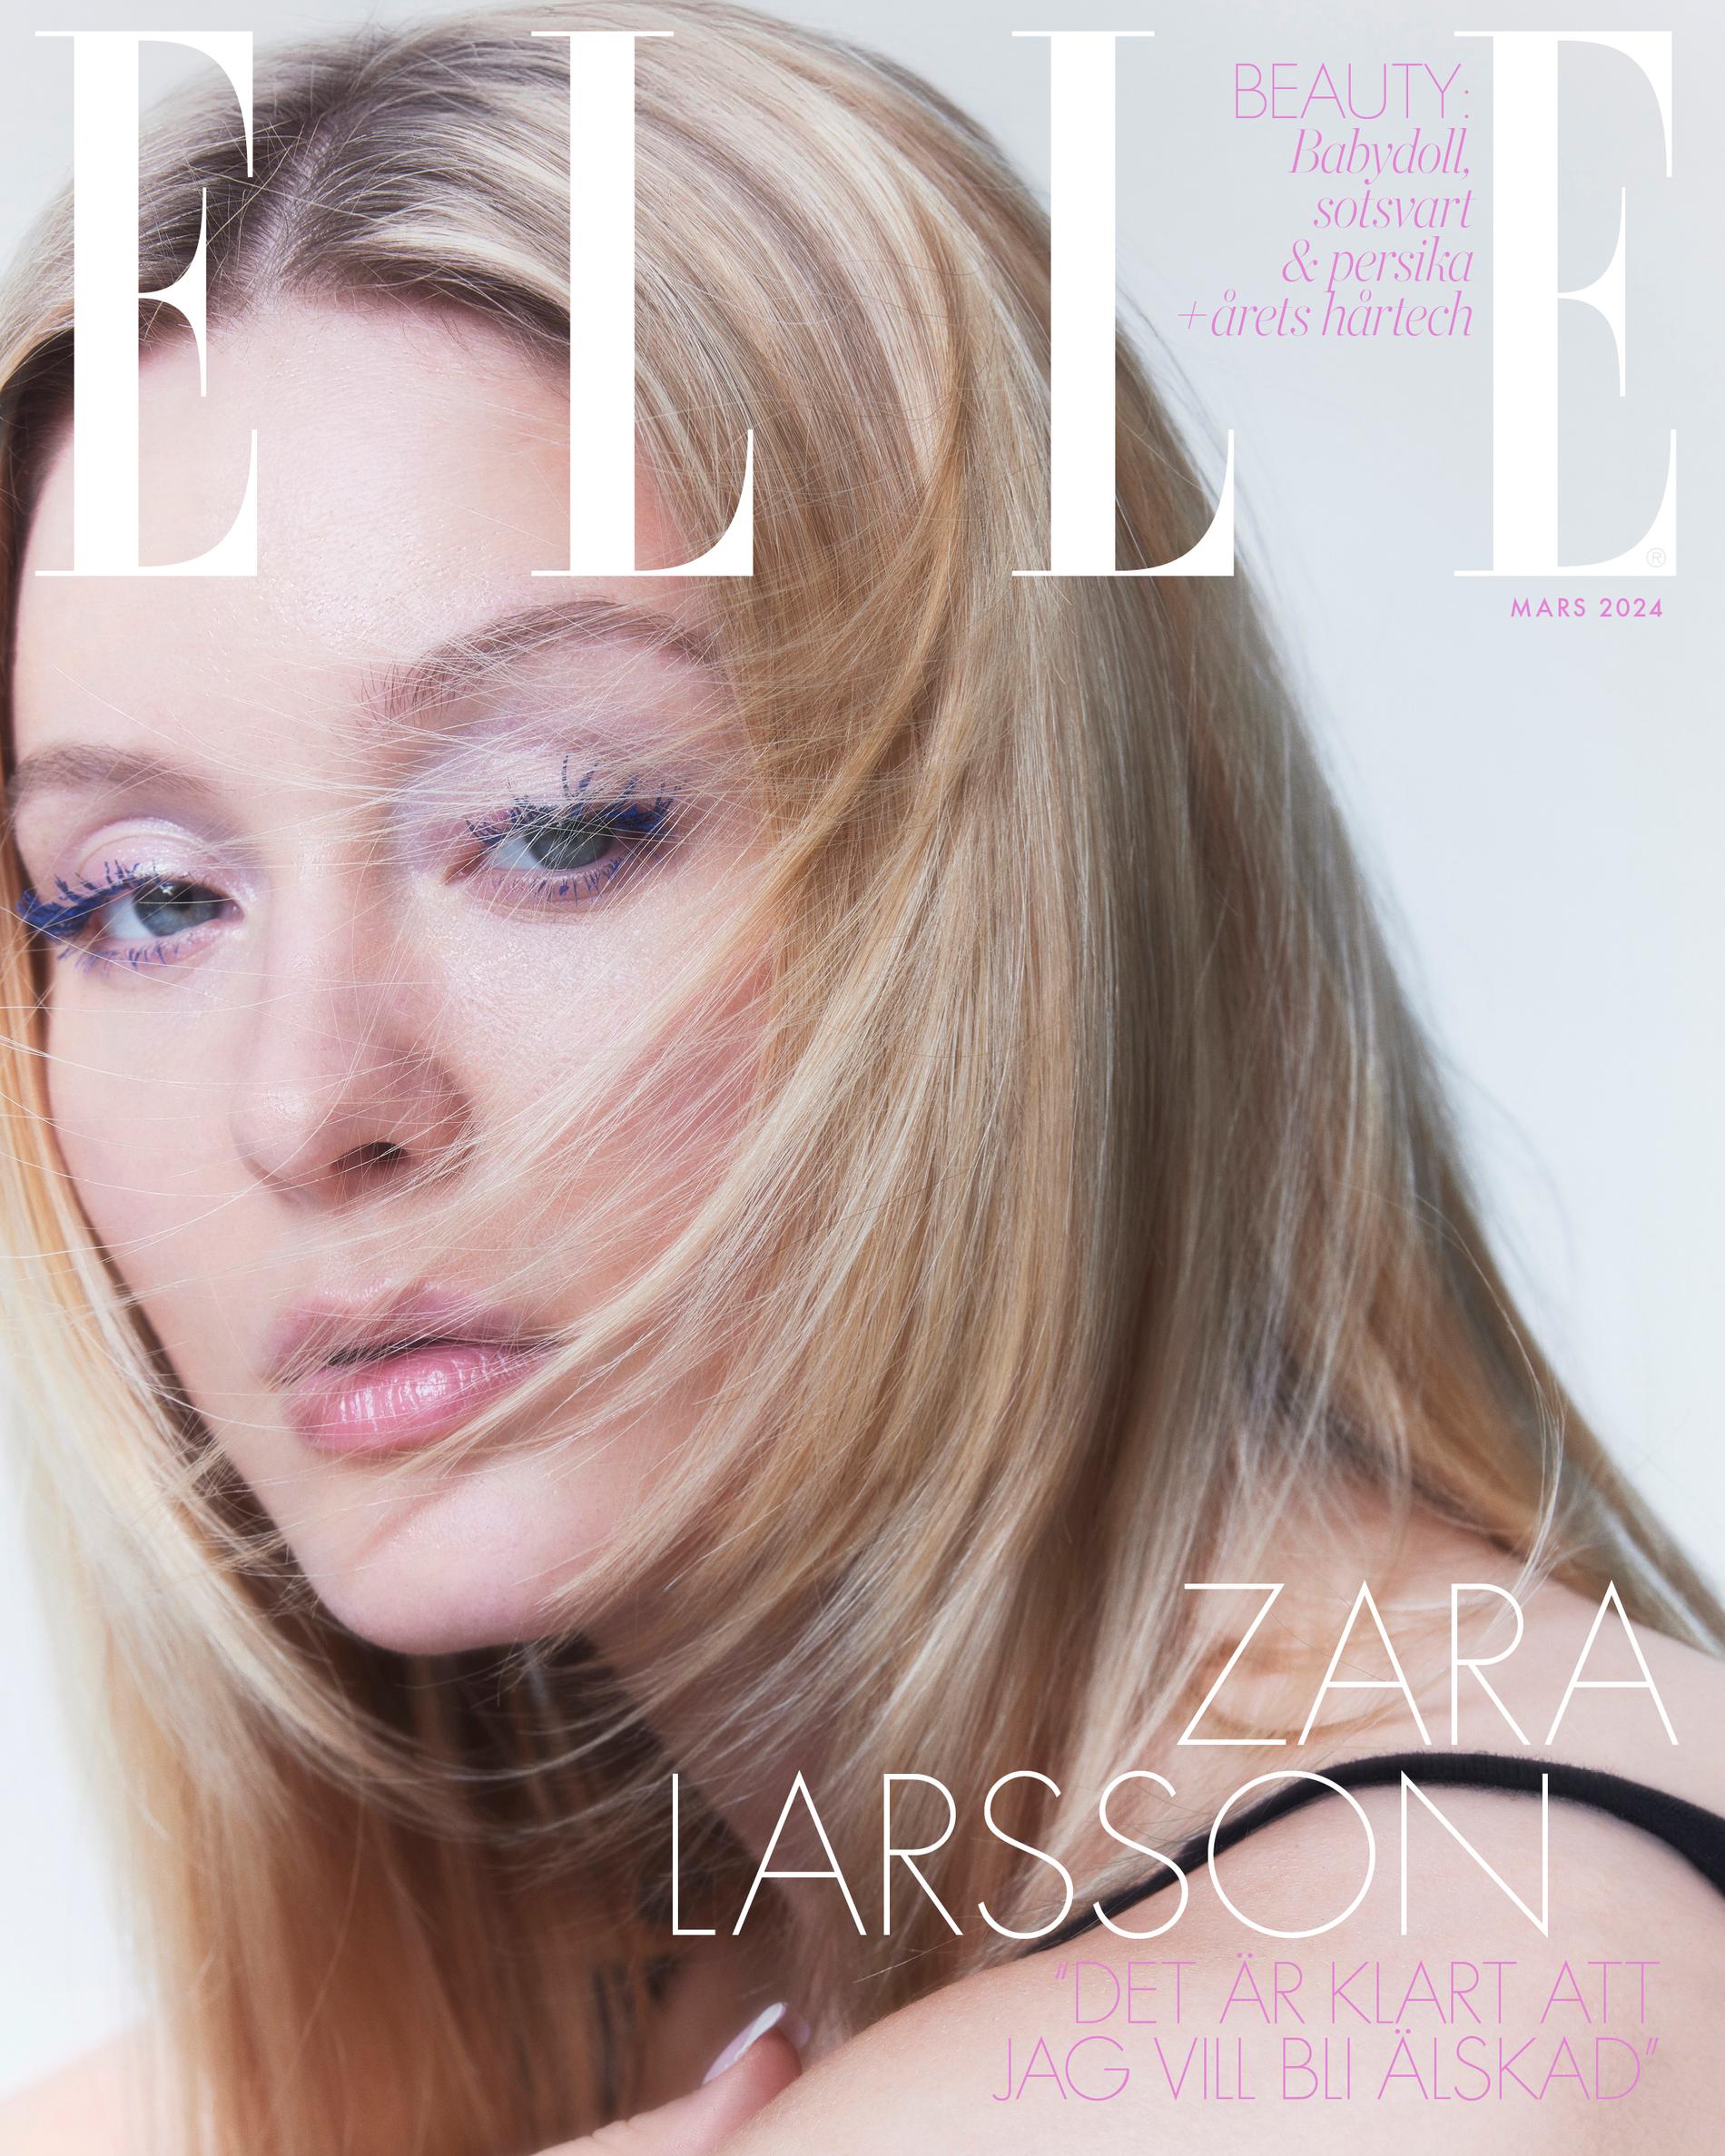 Zara Larsson på omslaget av kommande numret av Elle.